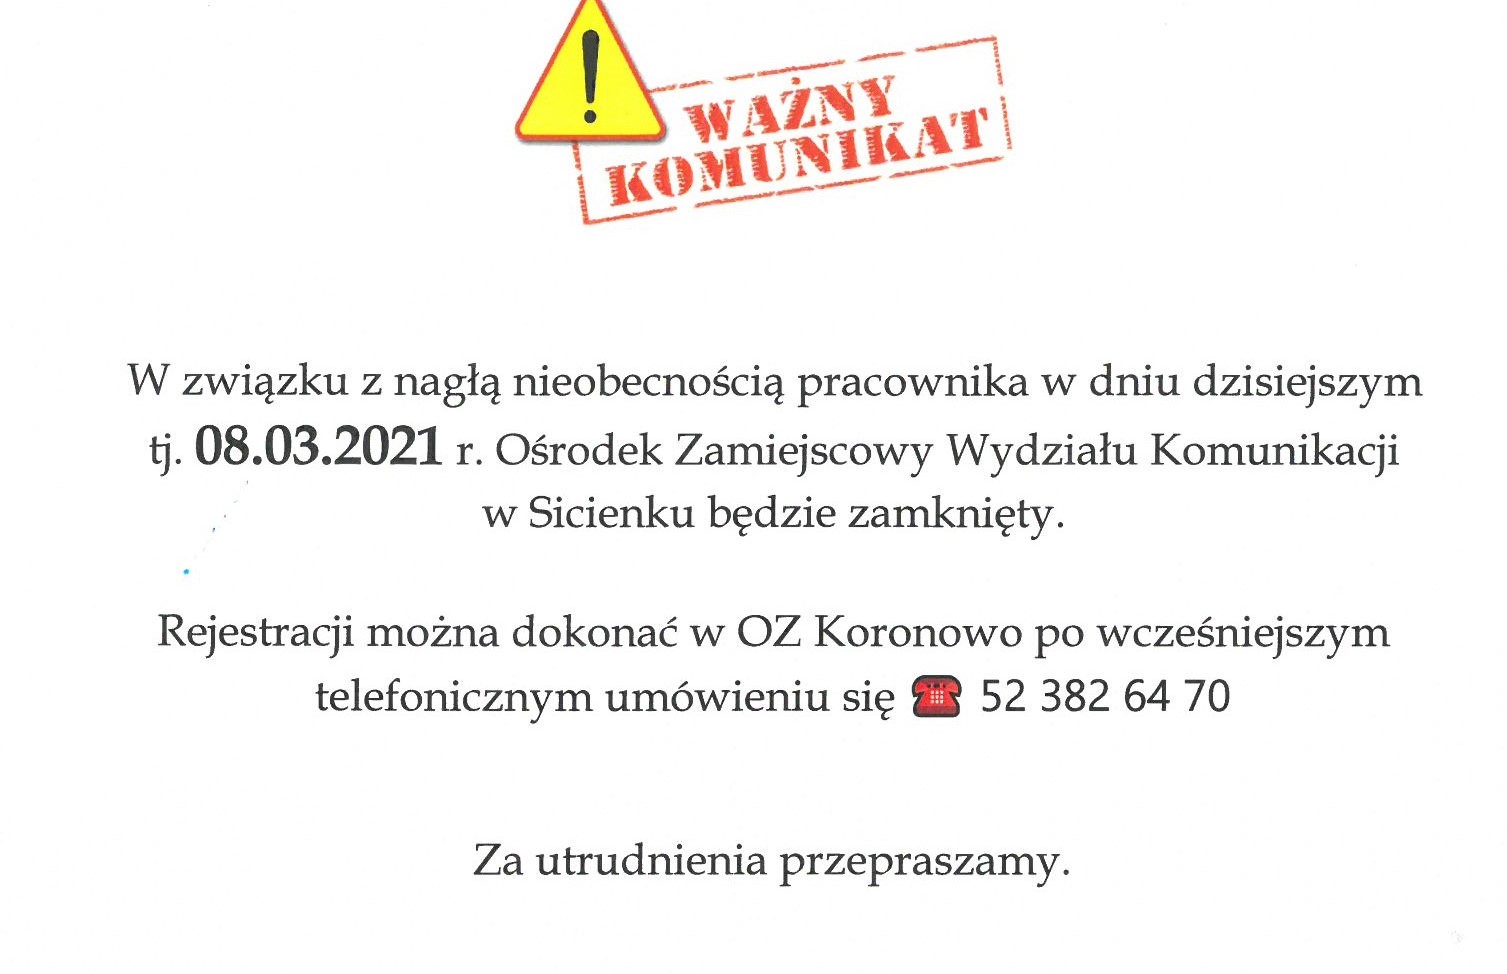 Wydziału Komunikacji  w Sicienku w dniu 08.03.2021 r. nieczynny